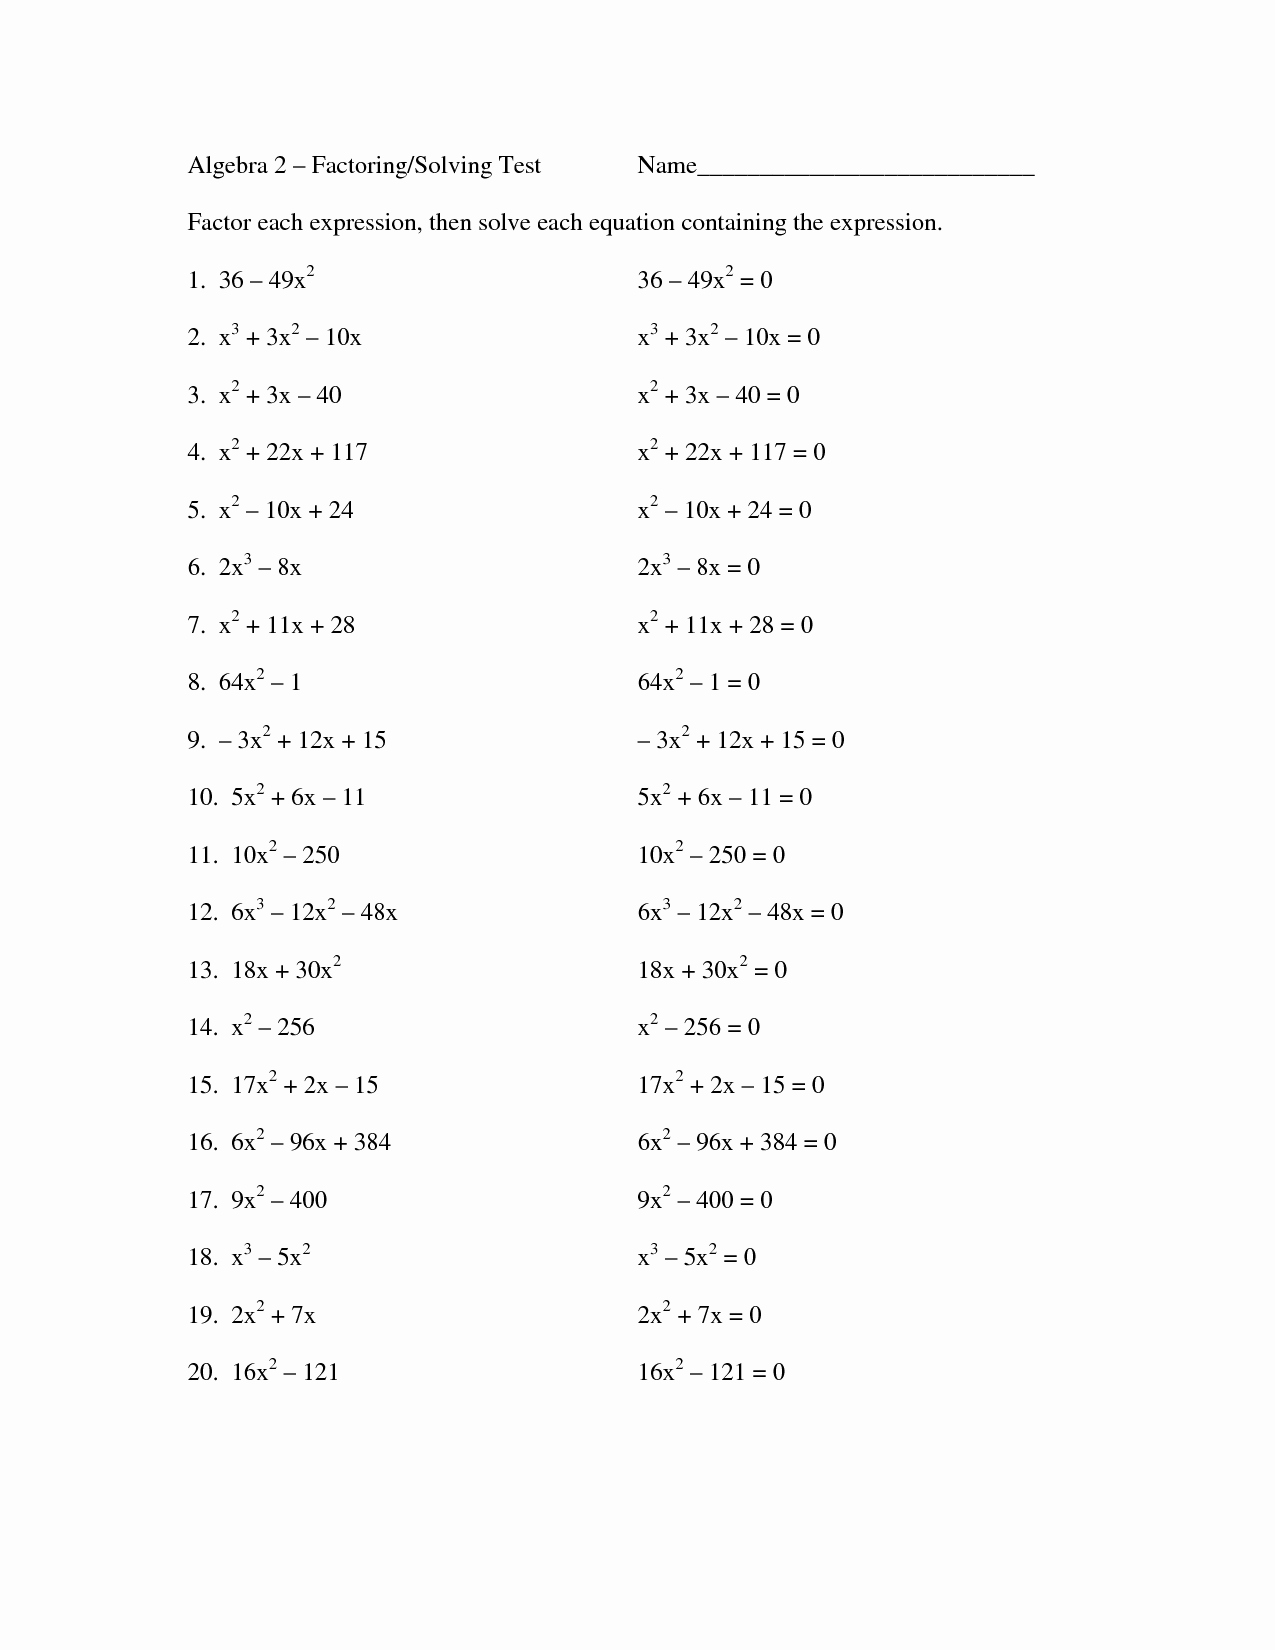 Factoring Worksheet Algebra 1 New 11 Best Of Factoring Worksheets Algebra Ii